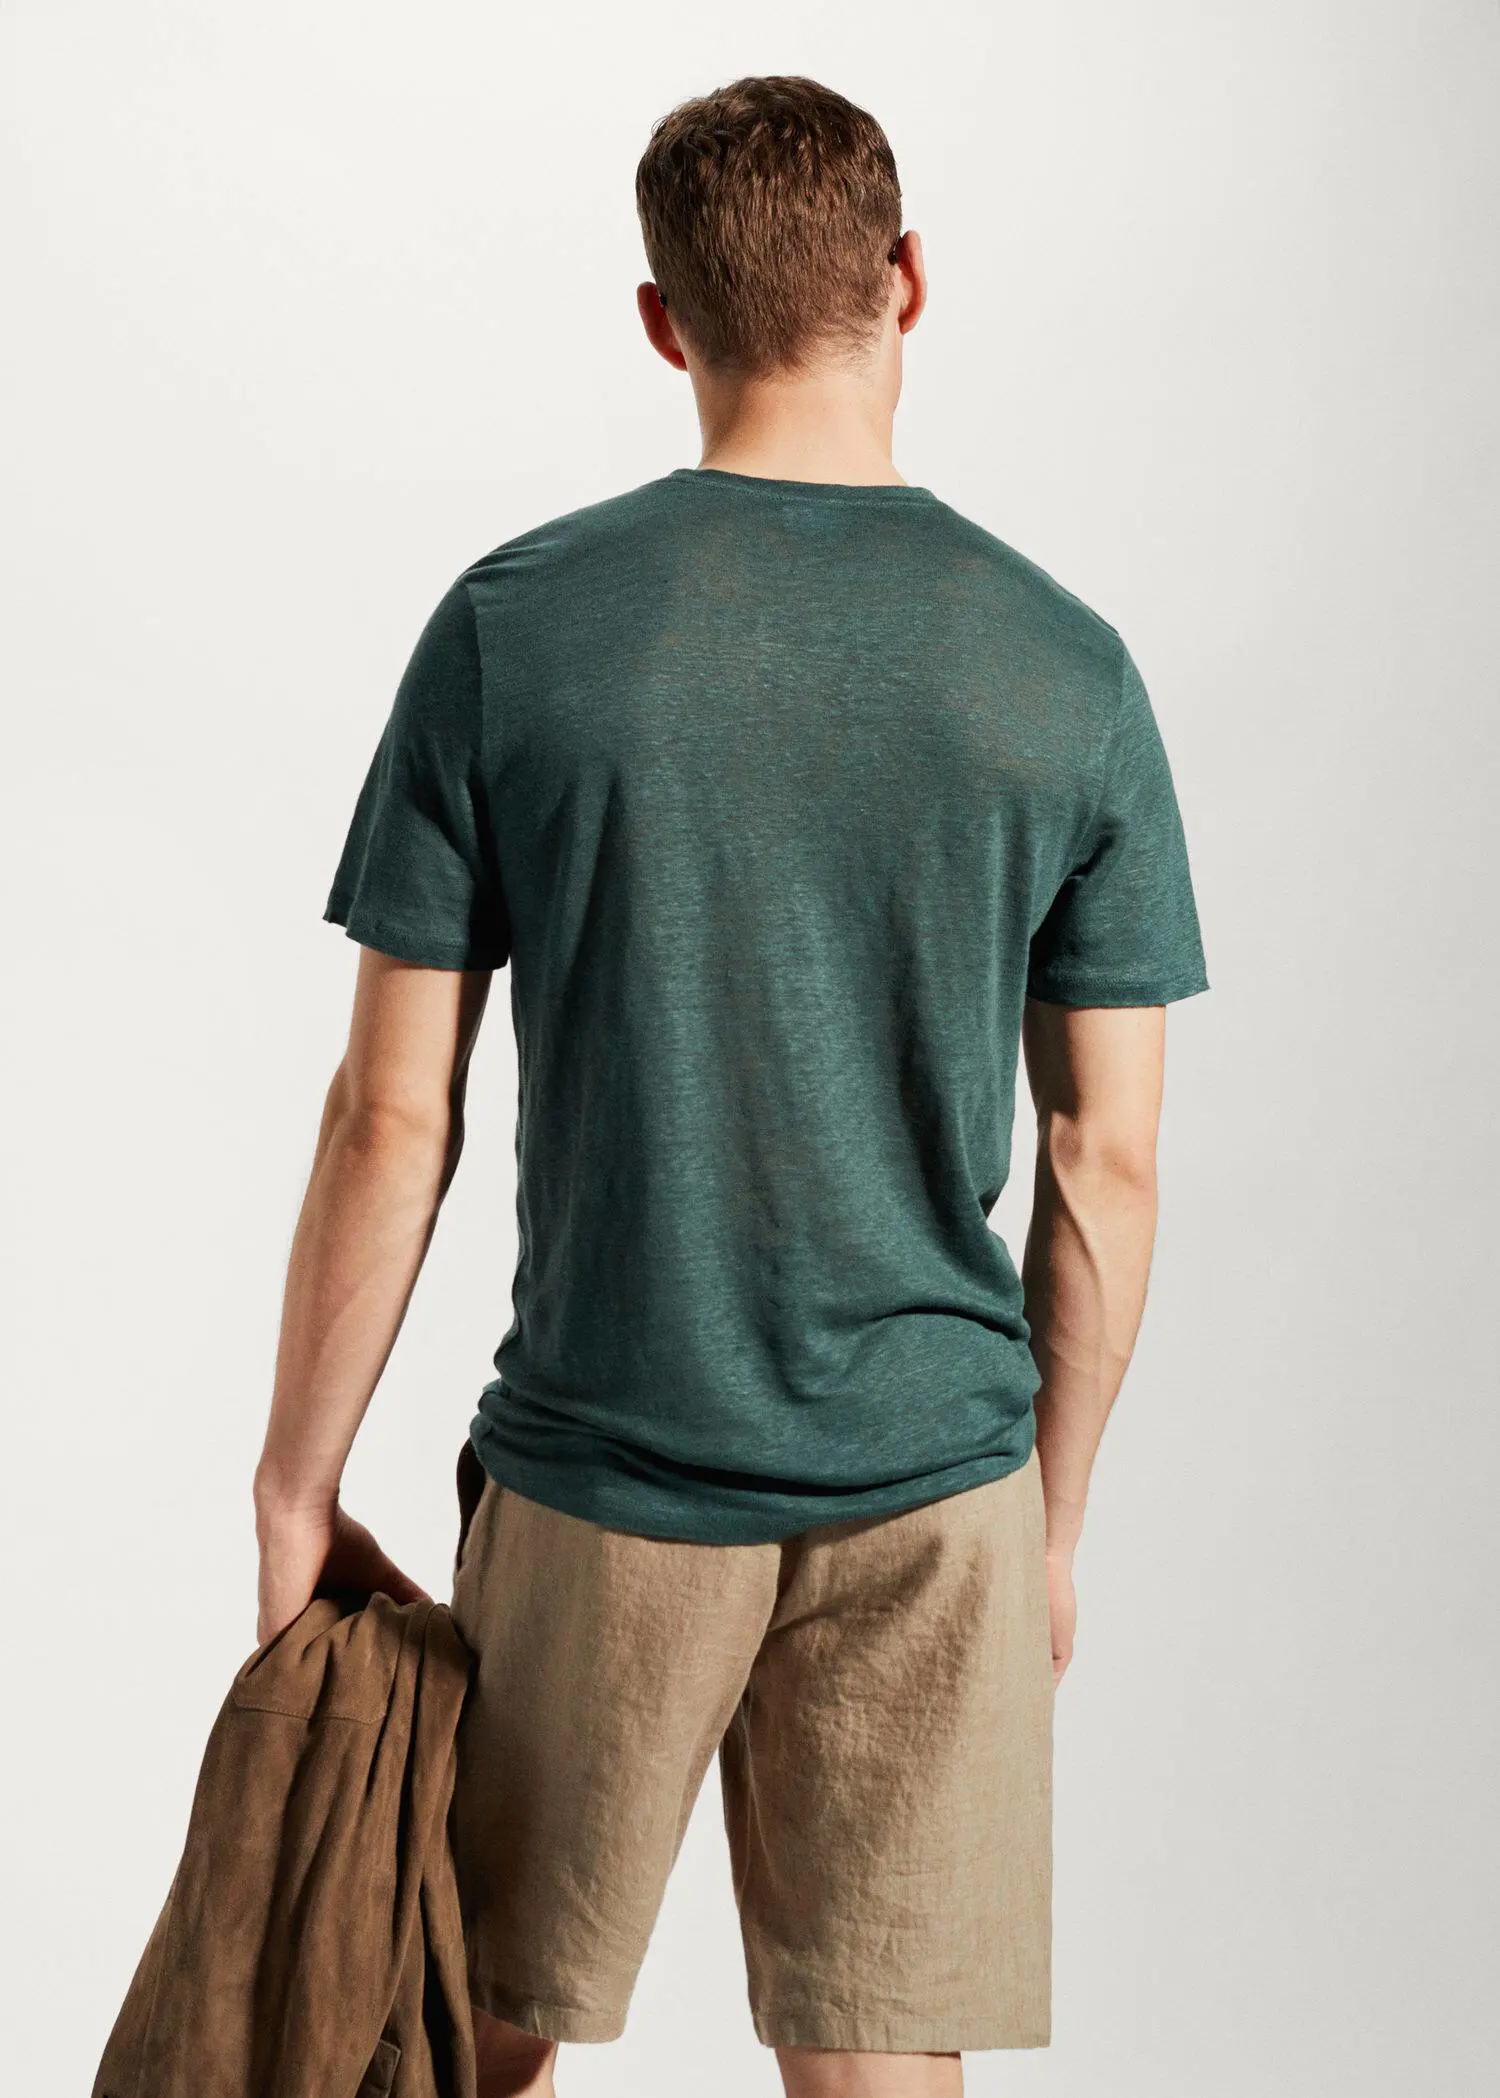 Mango 100% linen slim-fit t-shirt. a man in a green shirt holding a brown bag. 